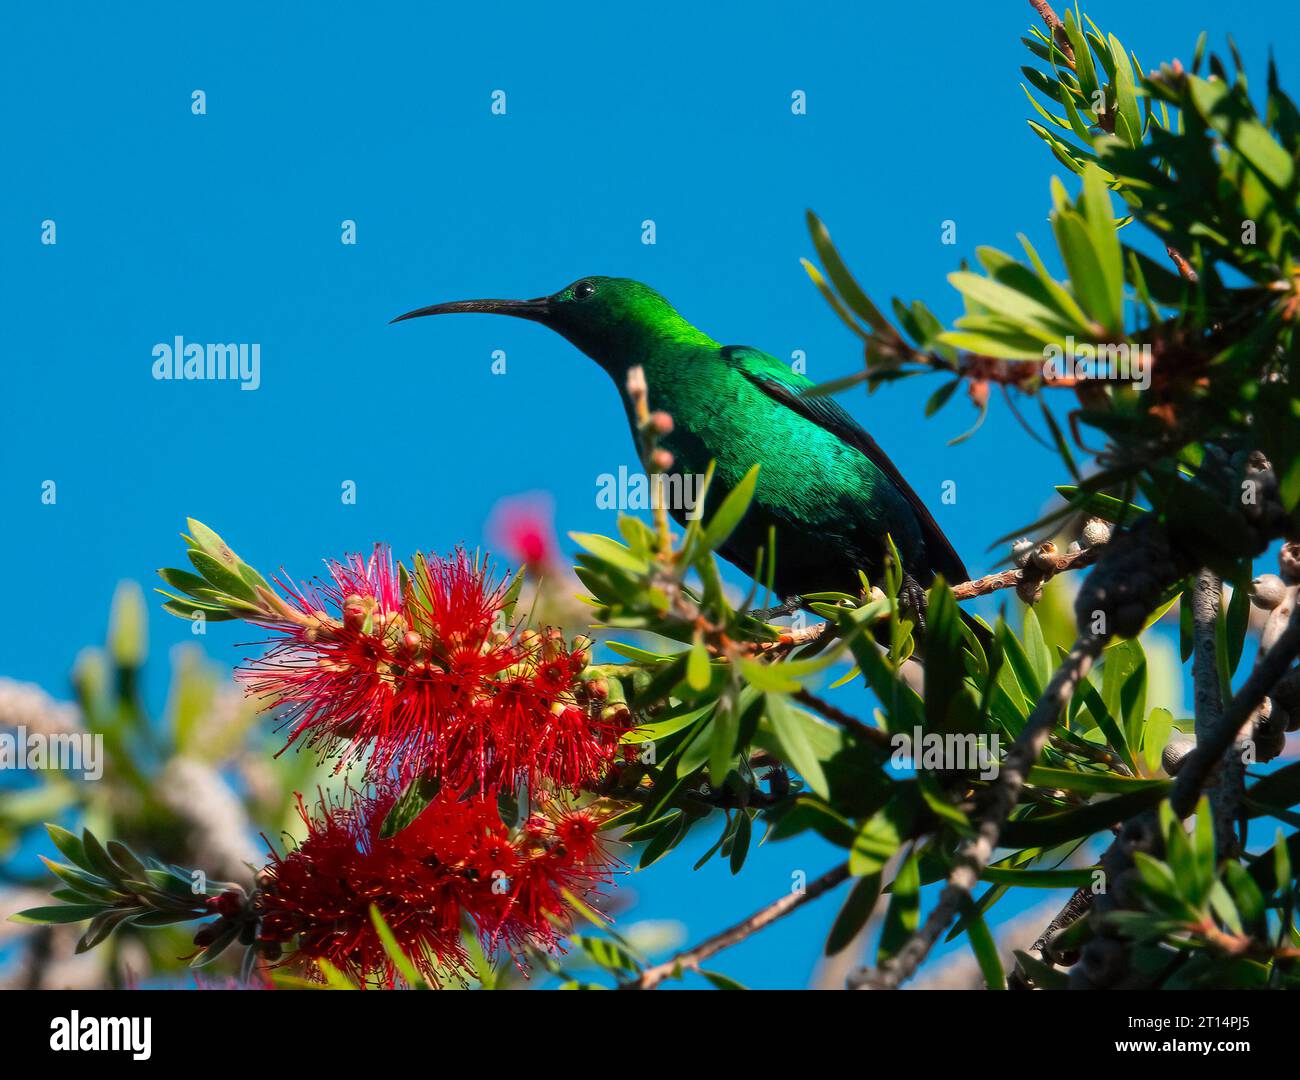 Der dominierende sunbird. Ein Malachit-sonnenvogel (Nectarinia famosa), der hoch in einem Flaschenbürstenbaum thront. Sie sind sehr dominant und werden andere Sonnenvögel schikanieren. Stockfoto